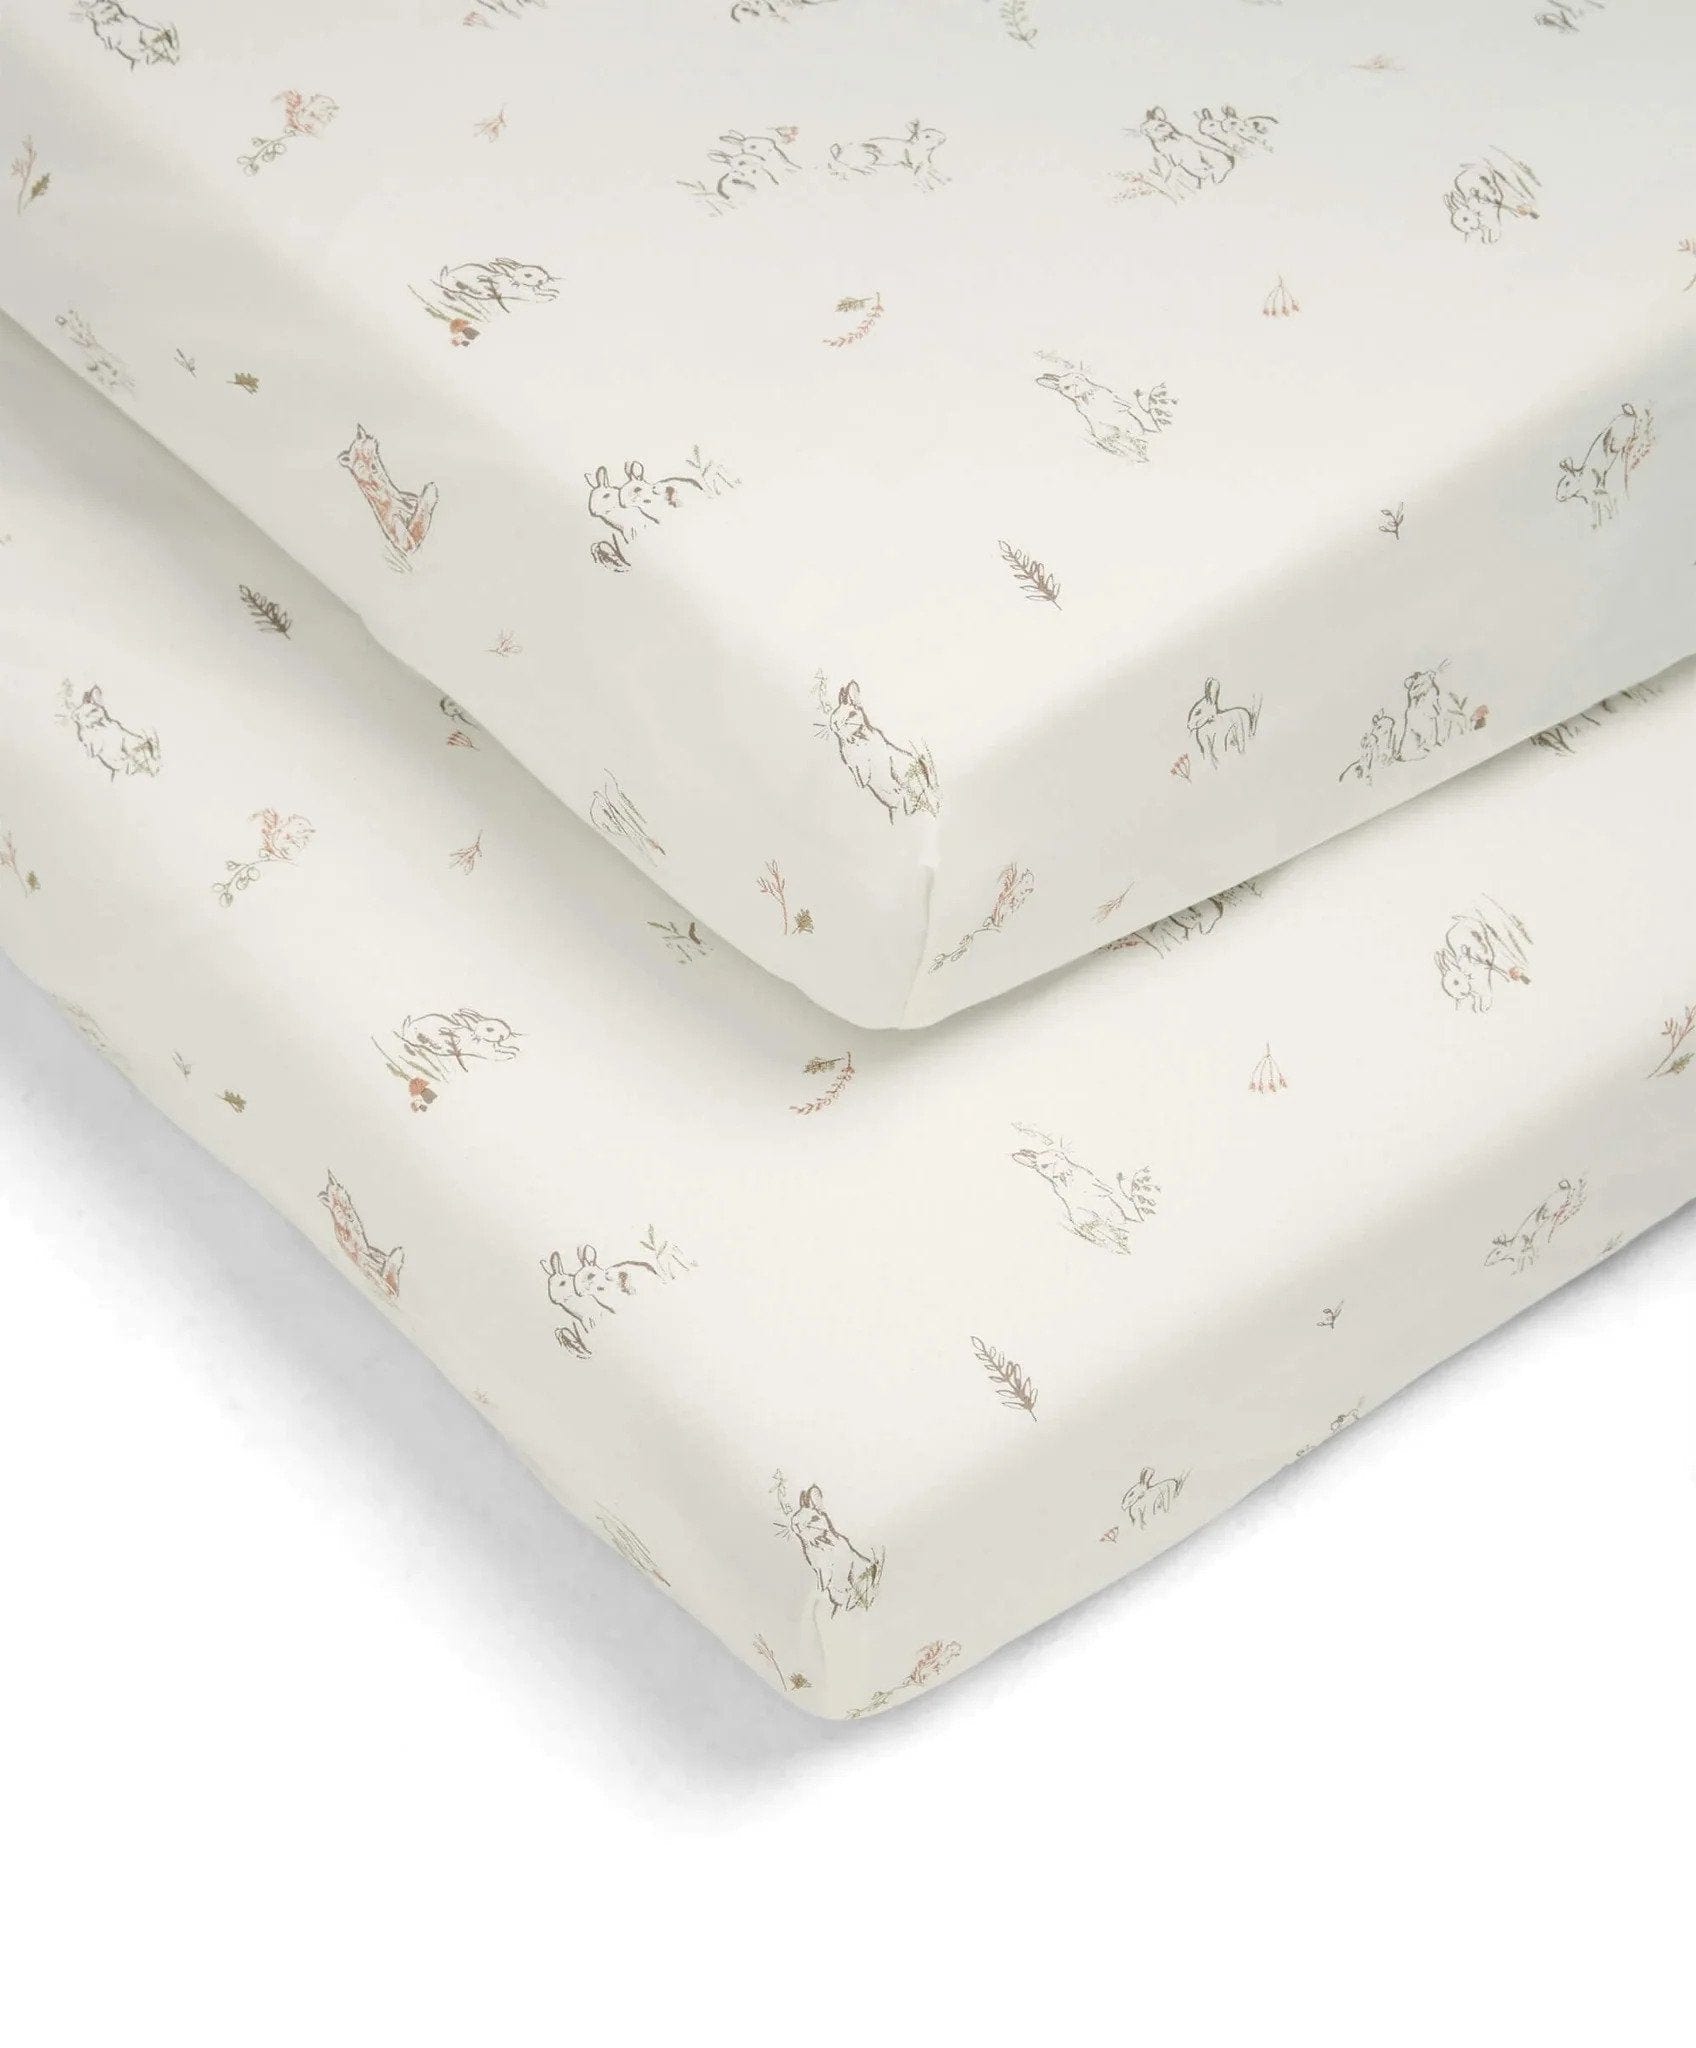 Mamas & Papas cot bed sheets Mamas & Papas Cotbed Fitted Sheets - Bunny/Fox 779703401